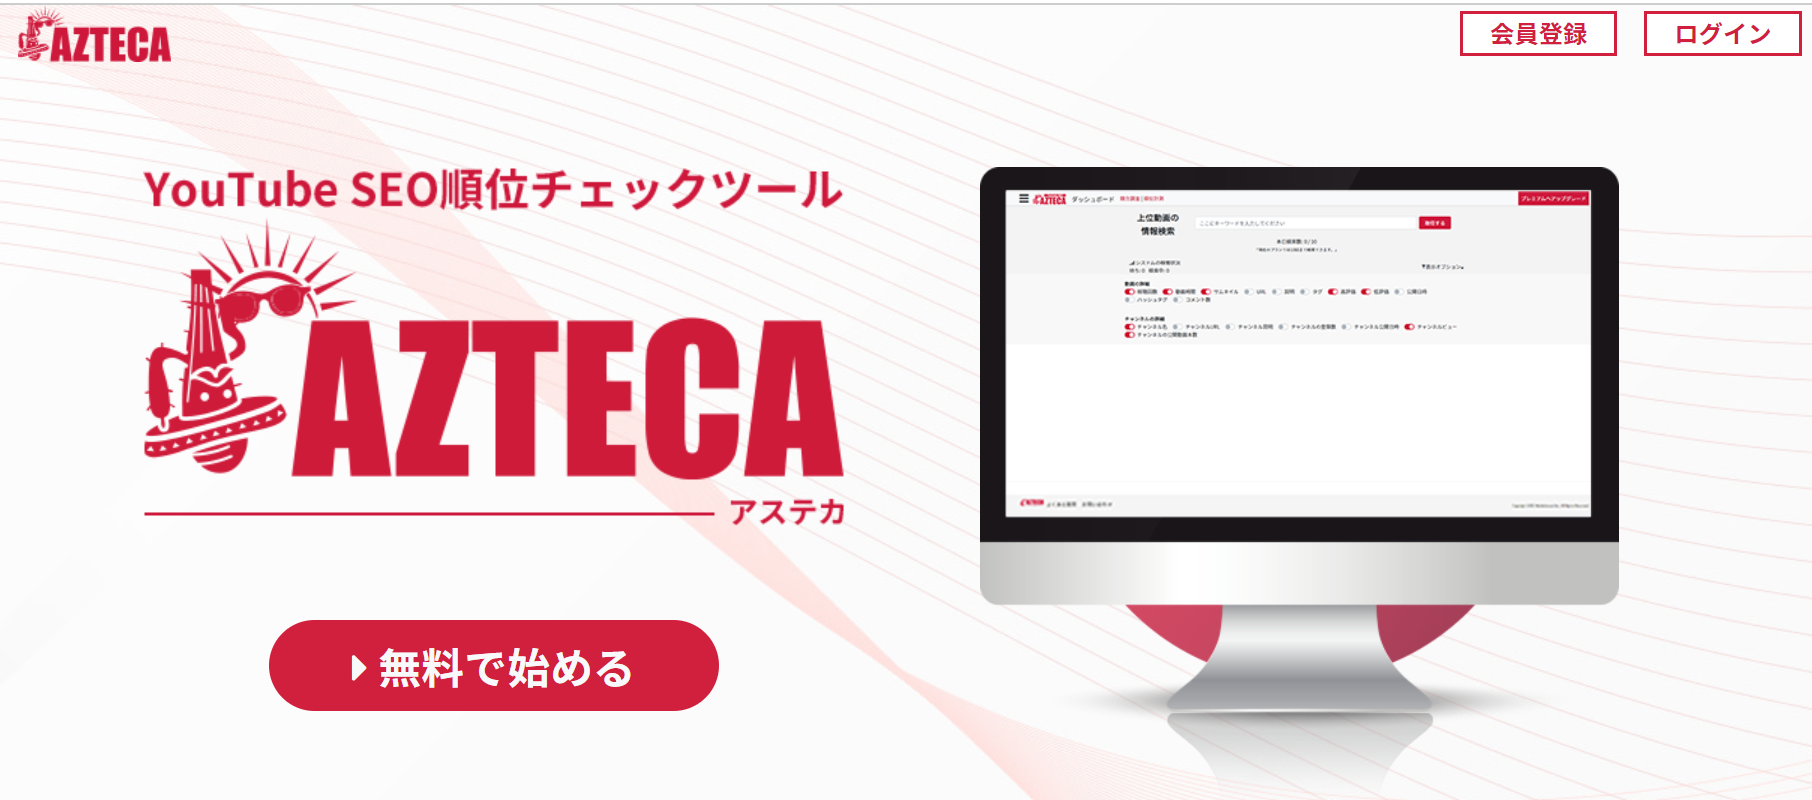 おすすめのYouTube分析ツール・サイト AZTECA